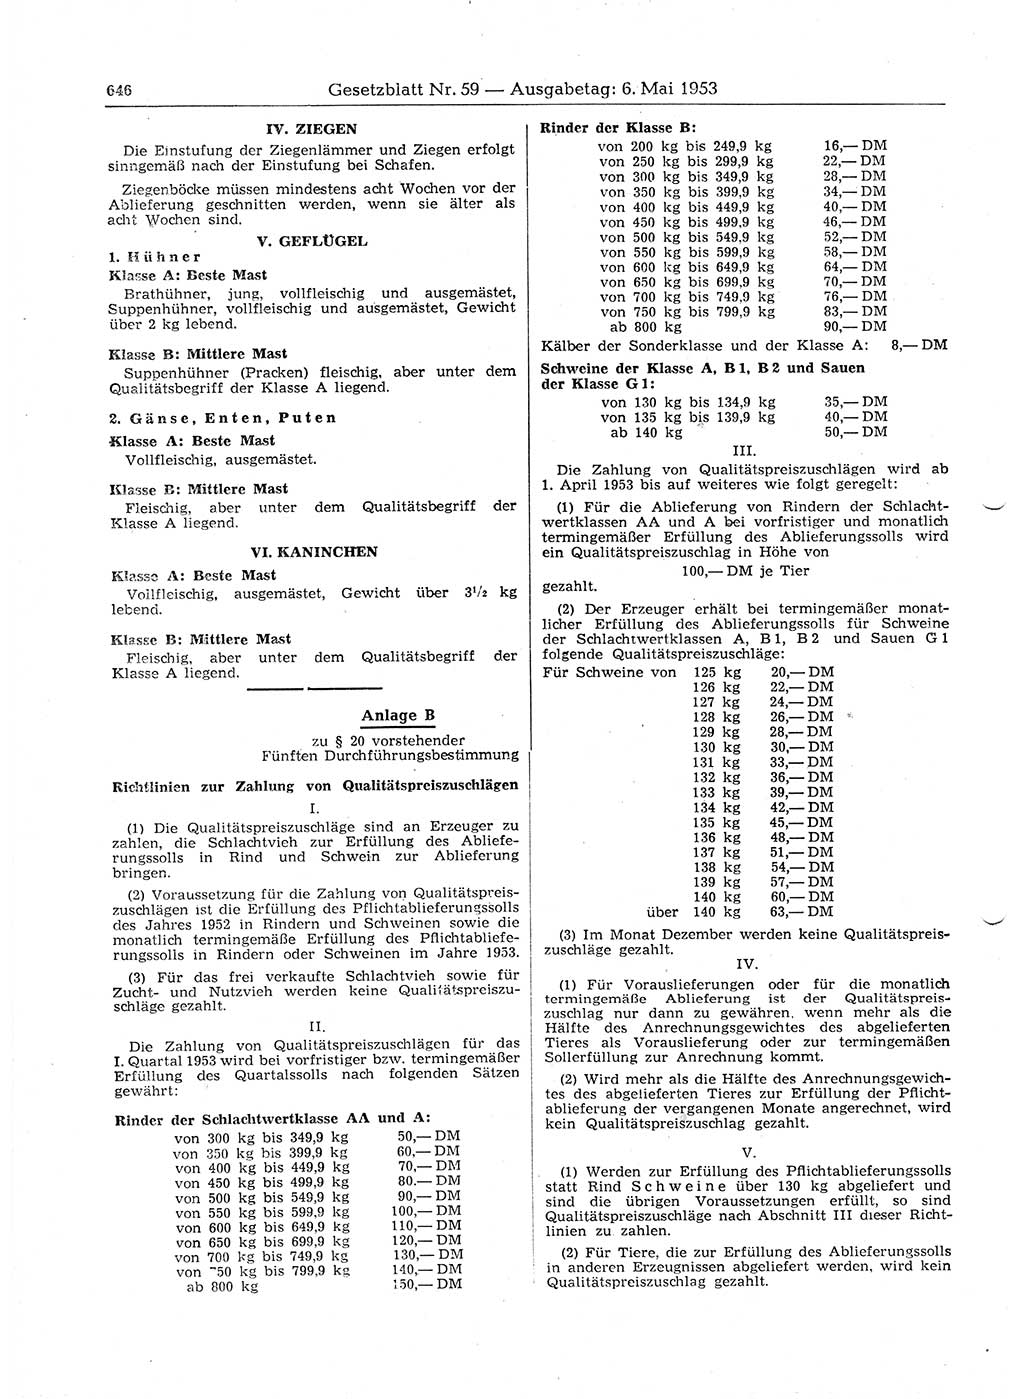 Gesetzblatt (GBl.) der Deutschen Demokratischen Republik (DDR) 1953, Seite 646 (GBl. DDR 1953, S. 646)